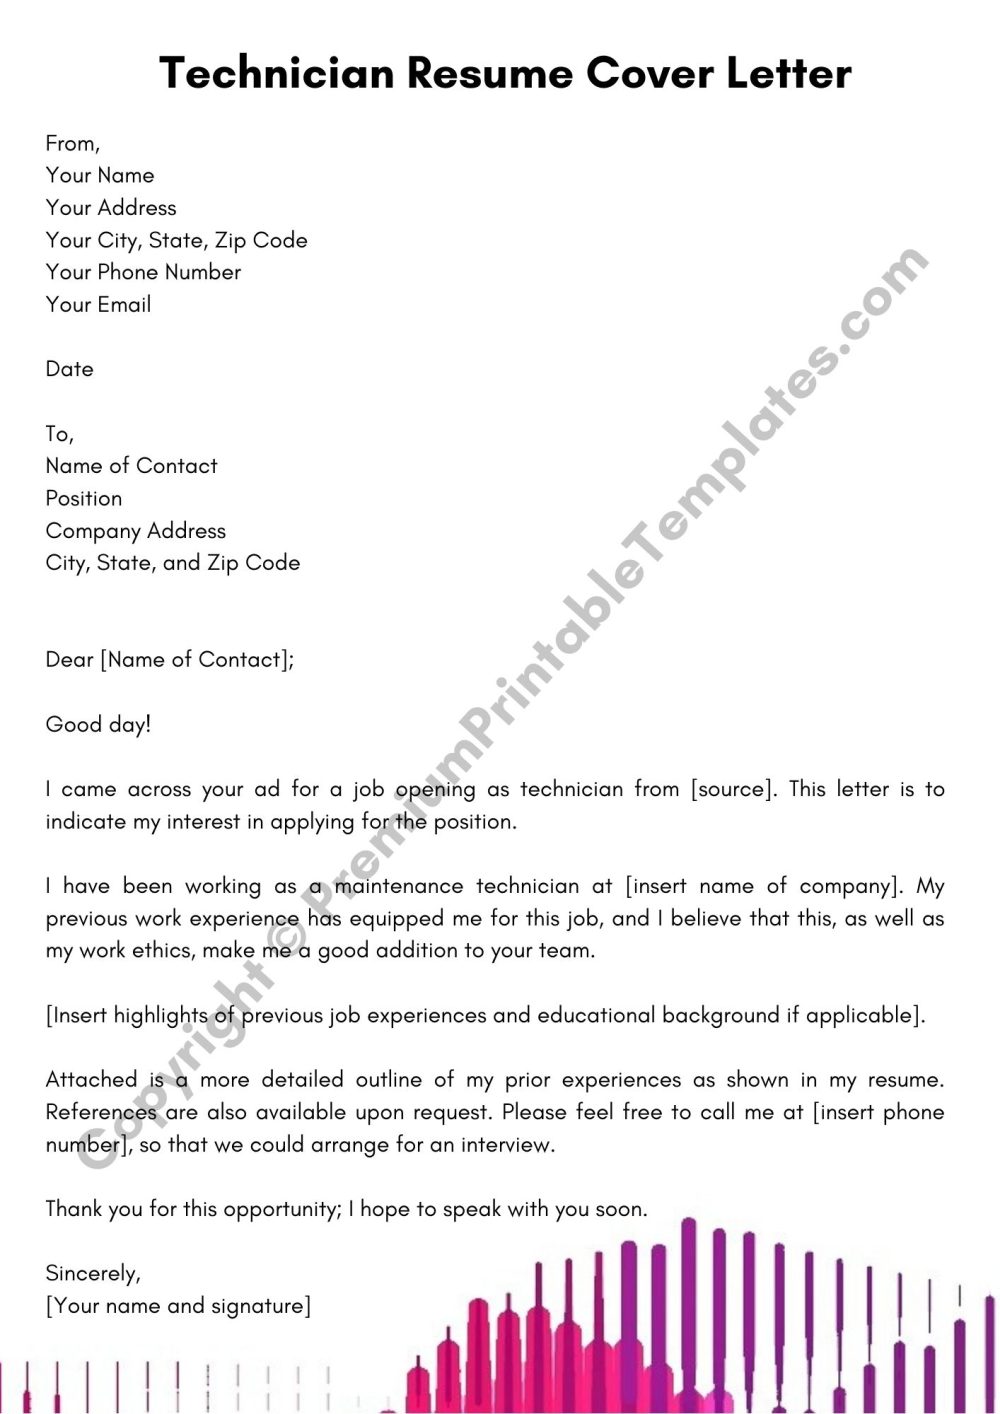 Technician Resume Cover Letter PDF